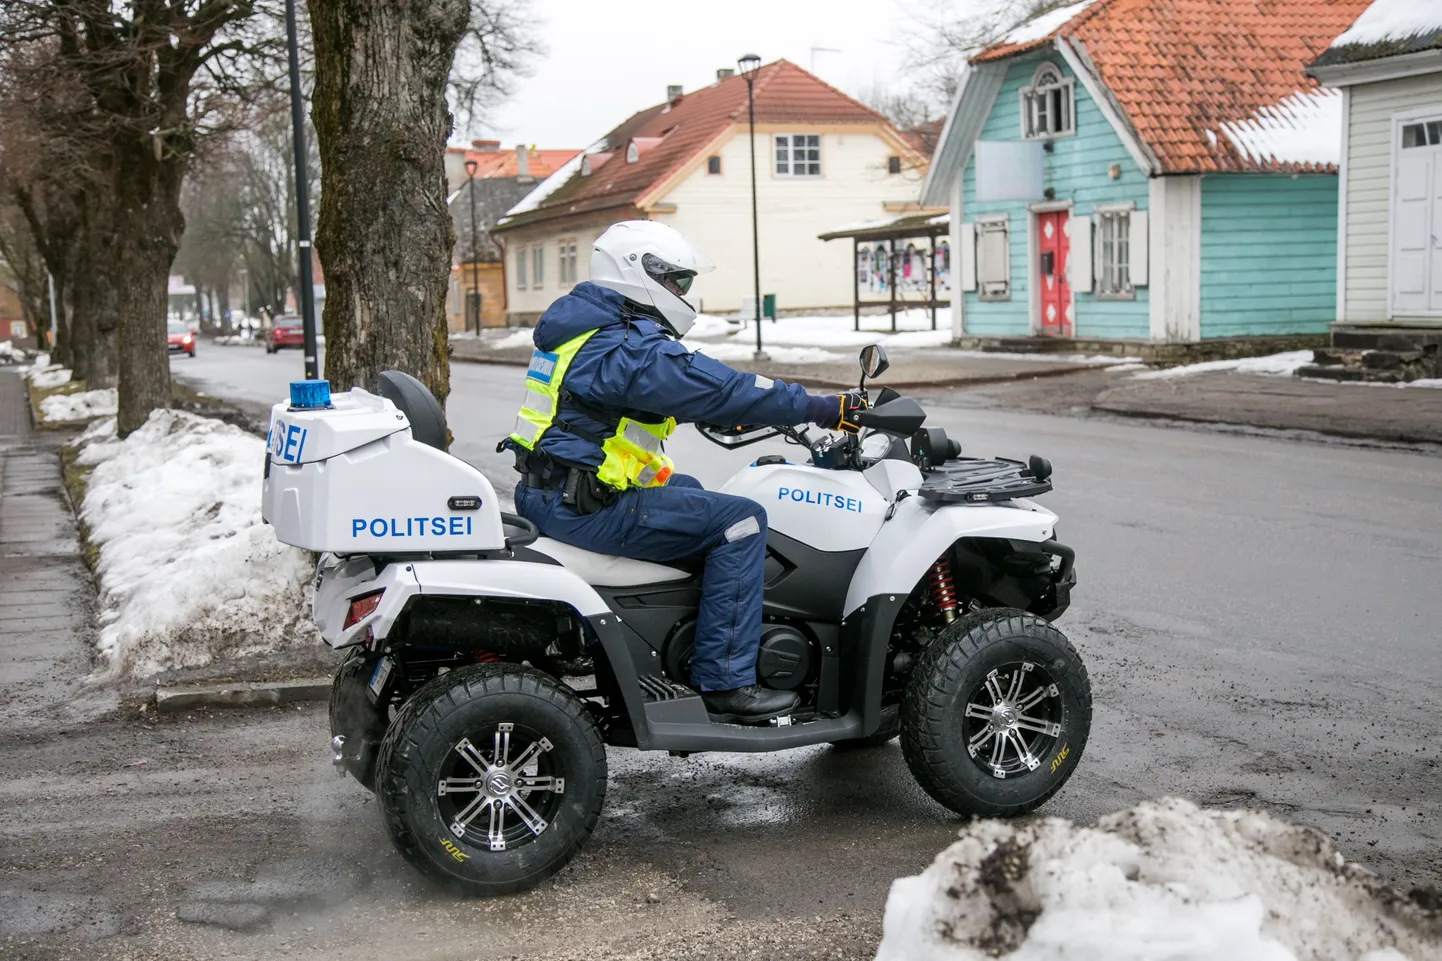 Politsei ATV